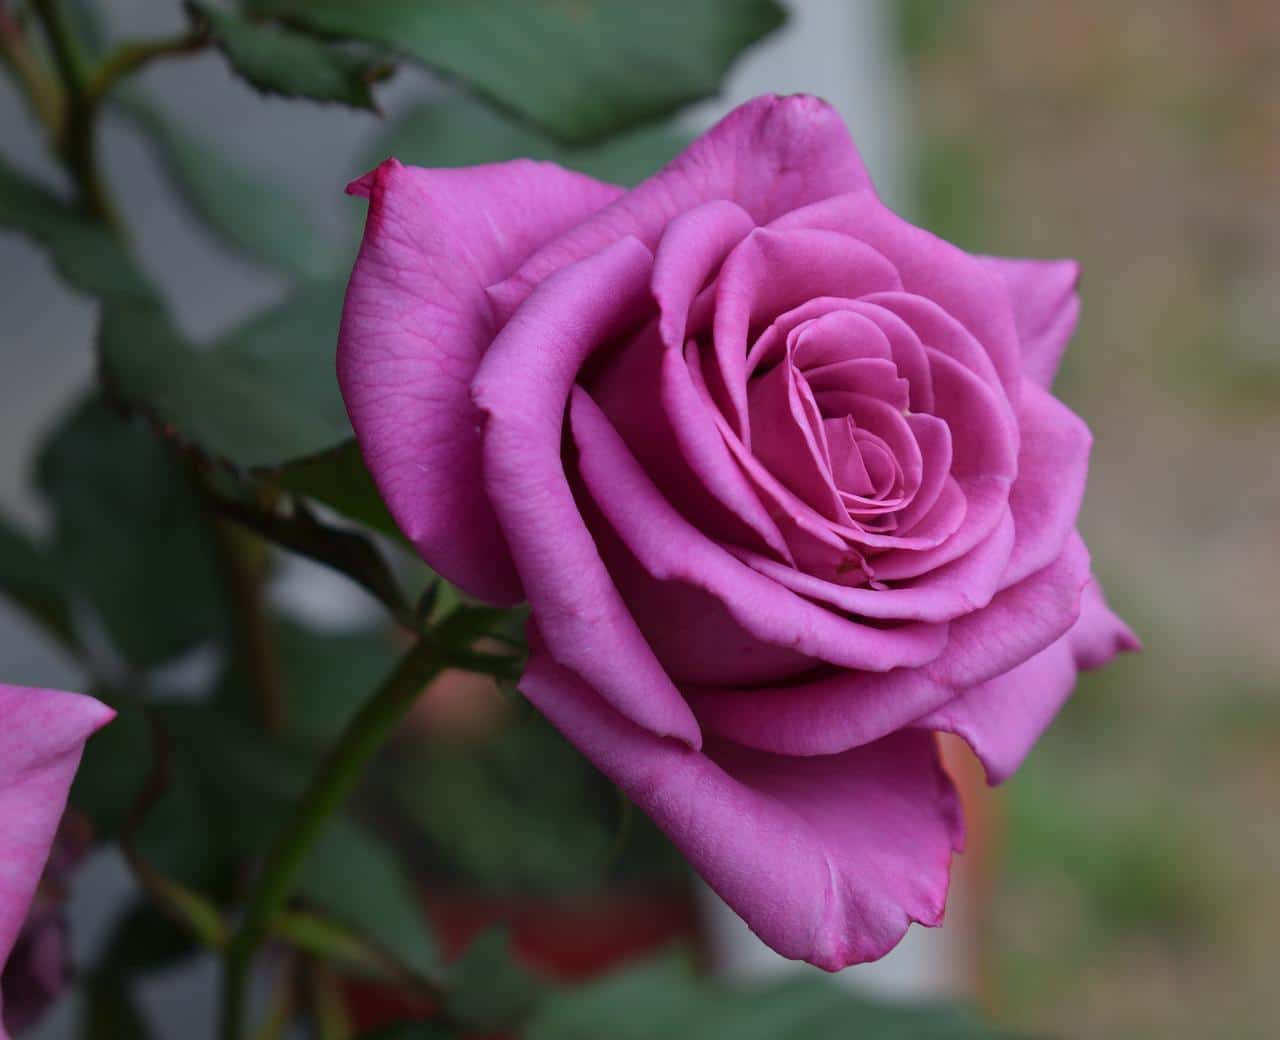 Purple roses are quite difficult